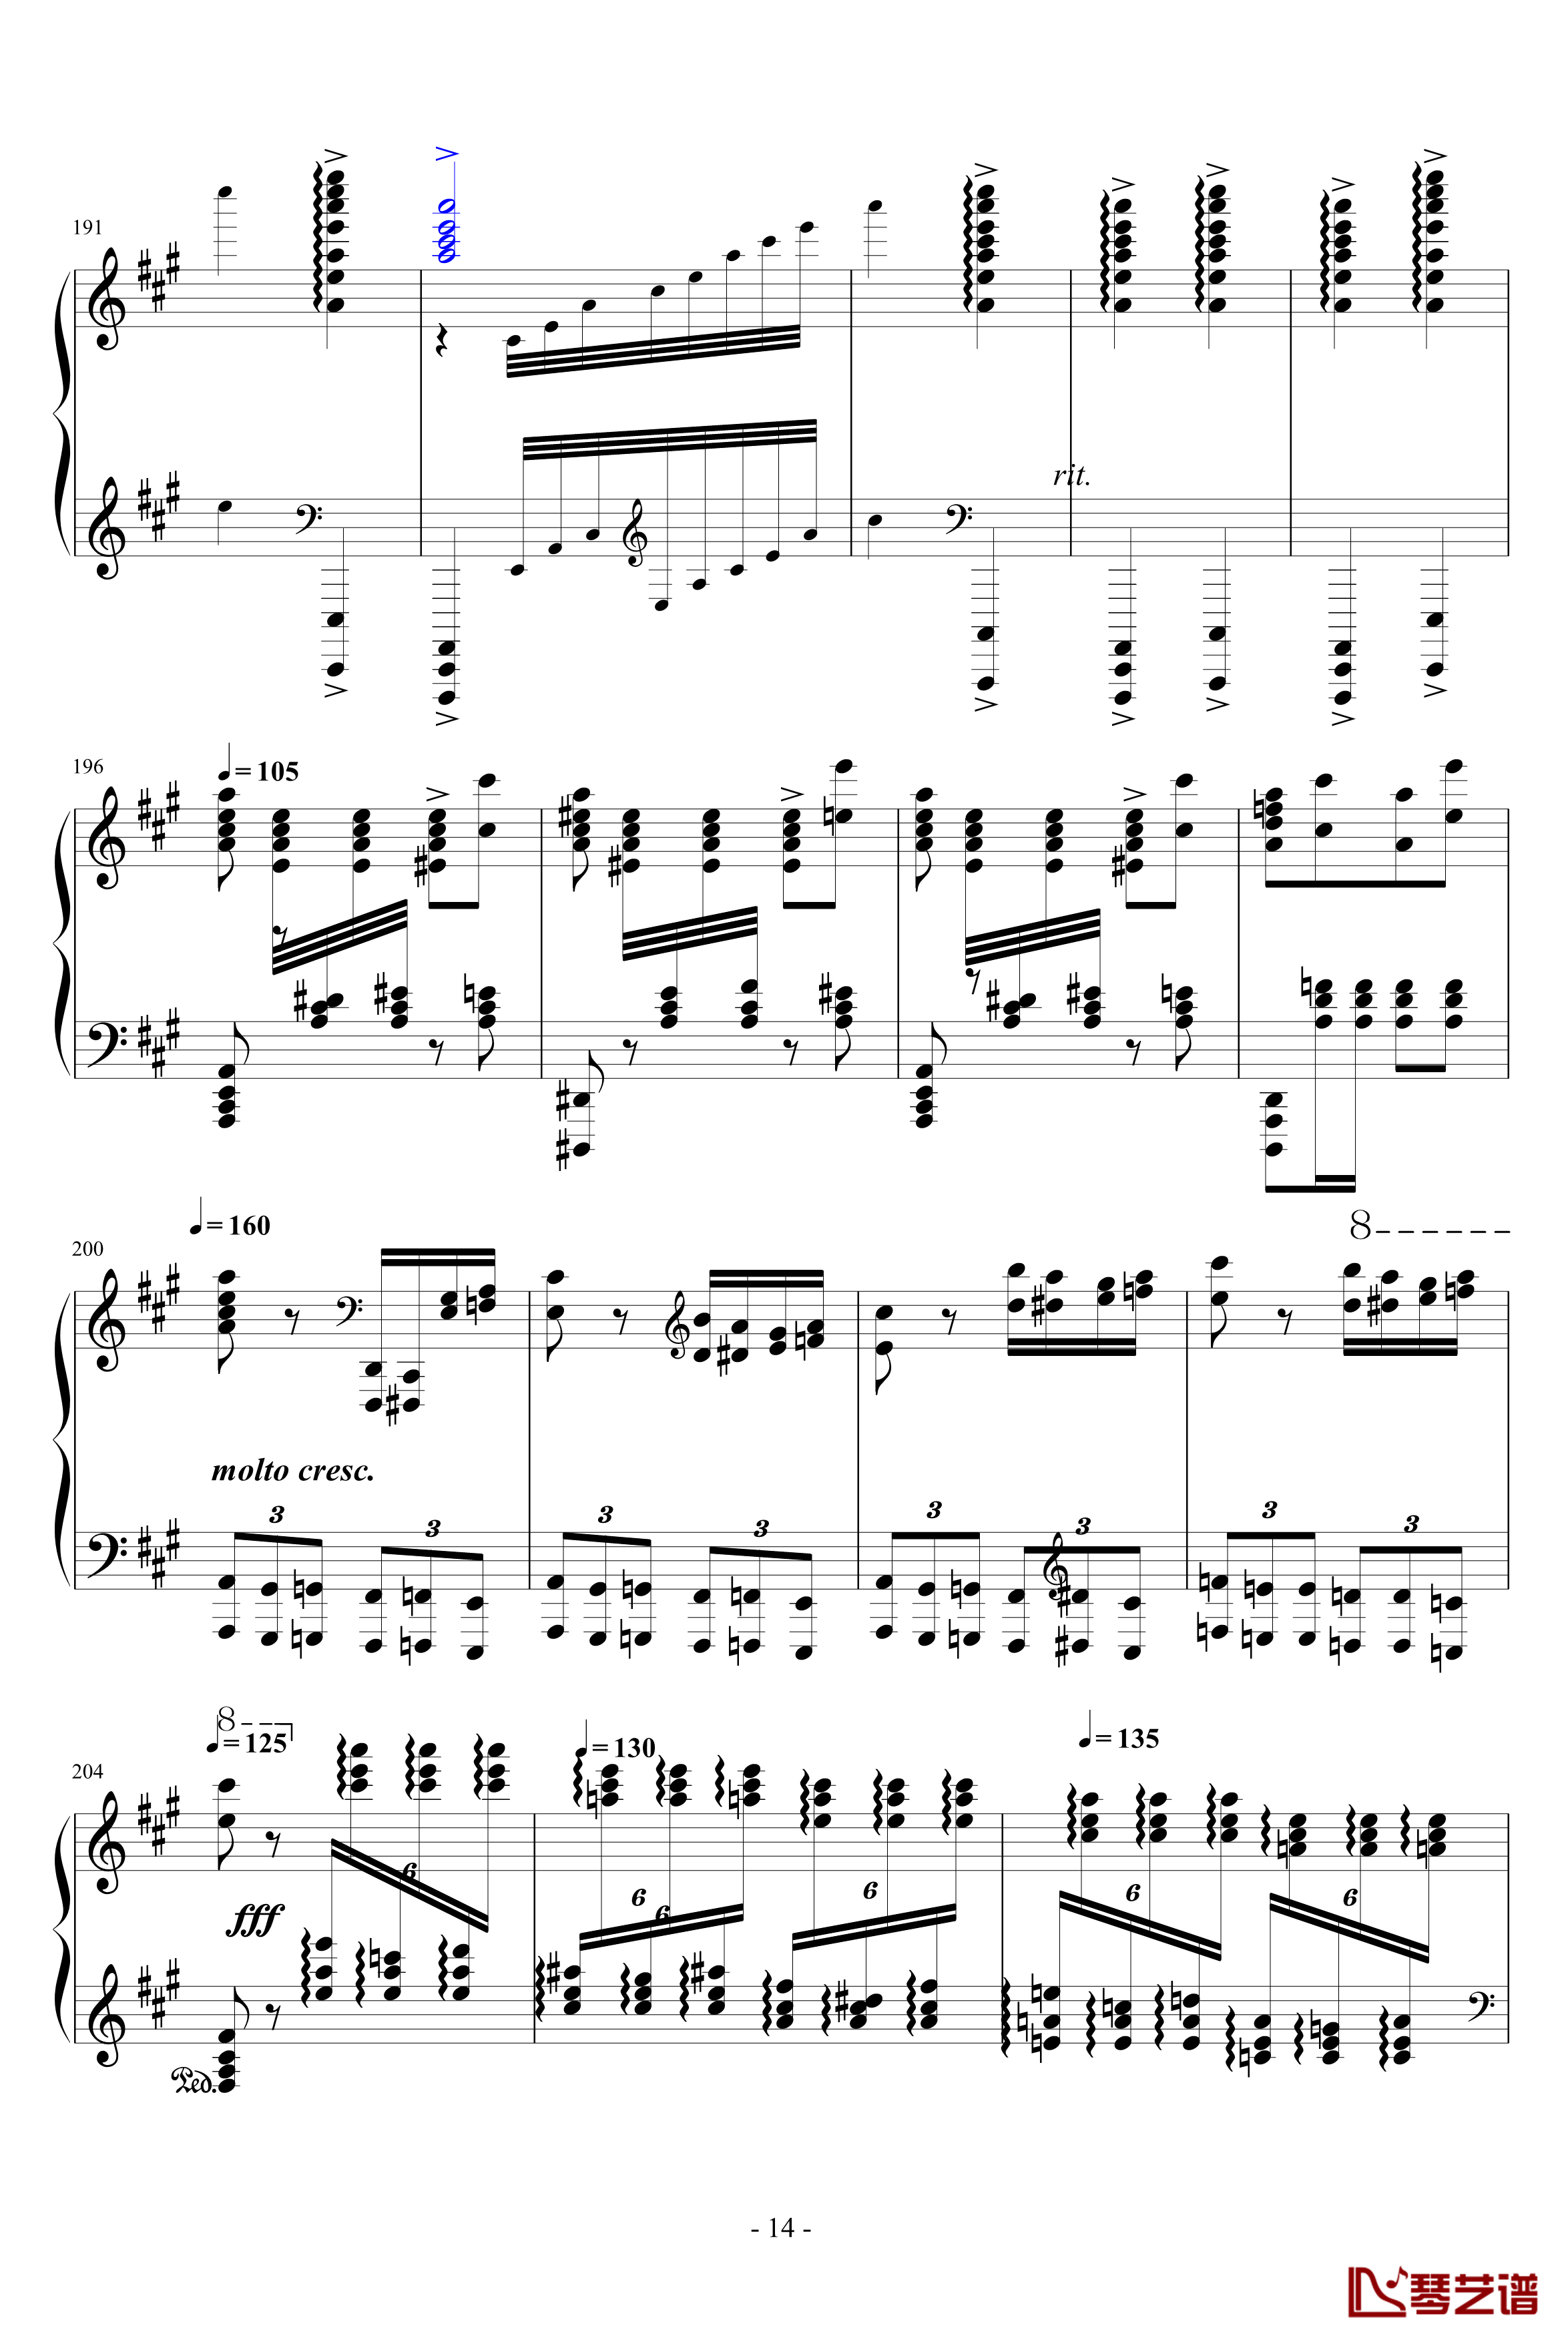 瓦洛多斯土耳其钢琴谱-爵士版-修正-瓦洛多斯14